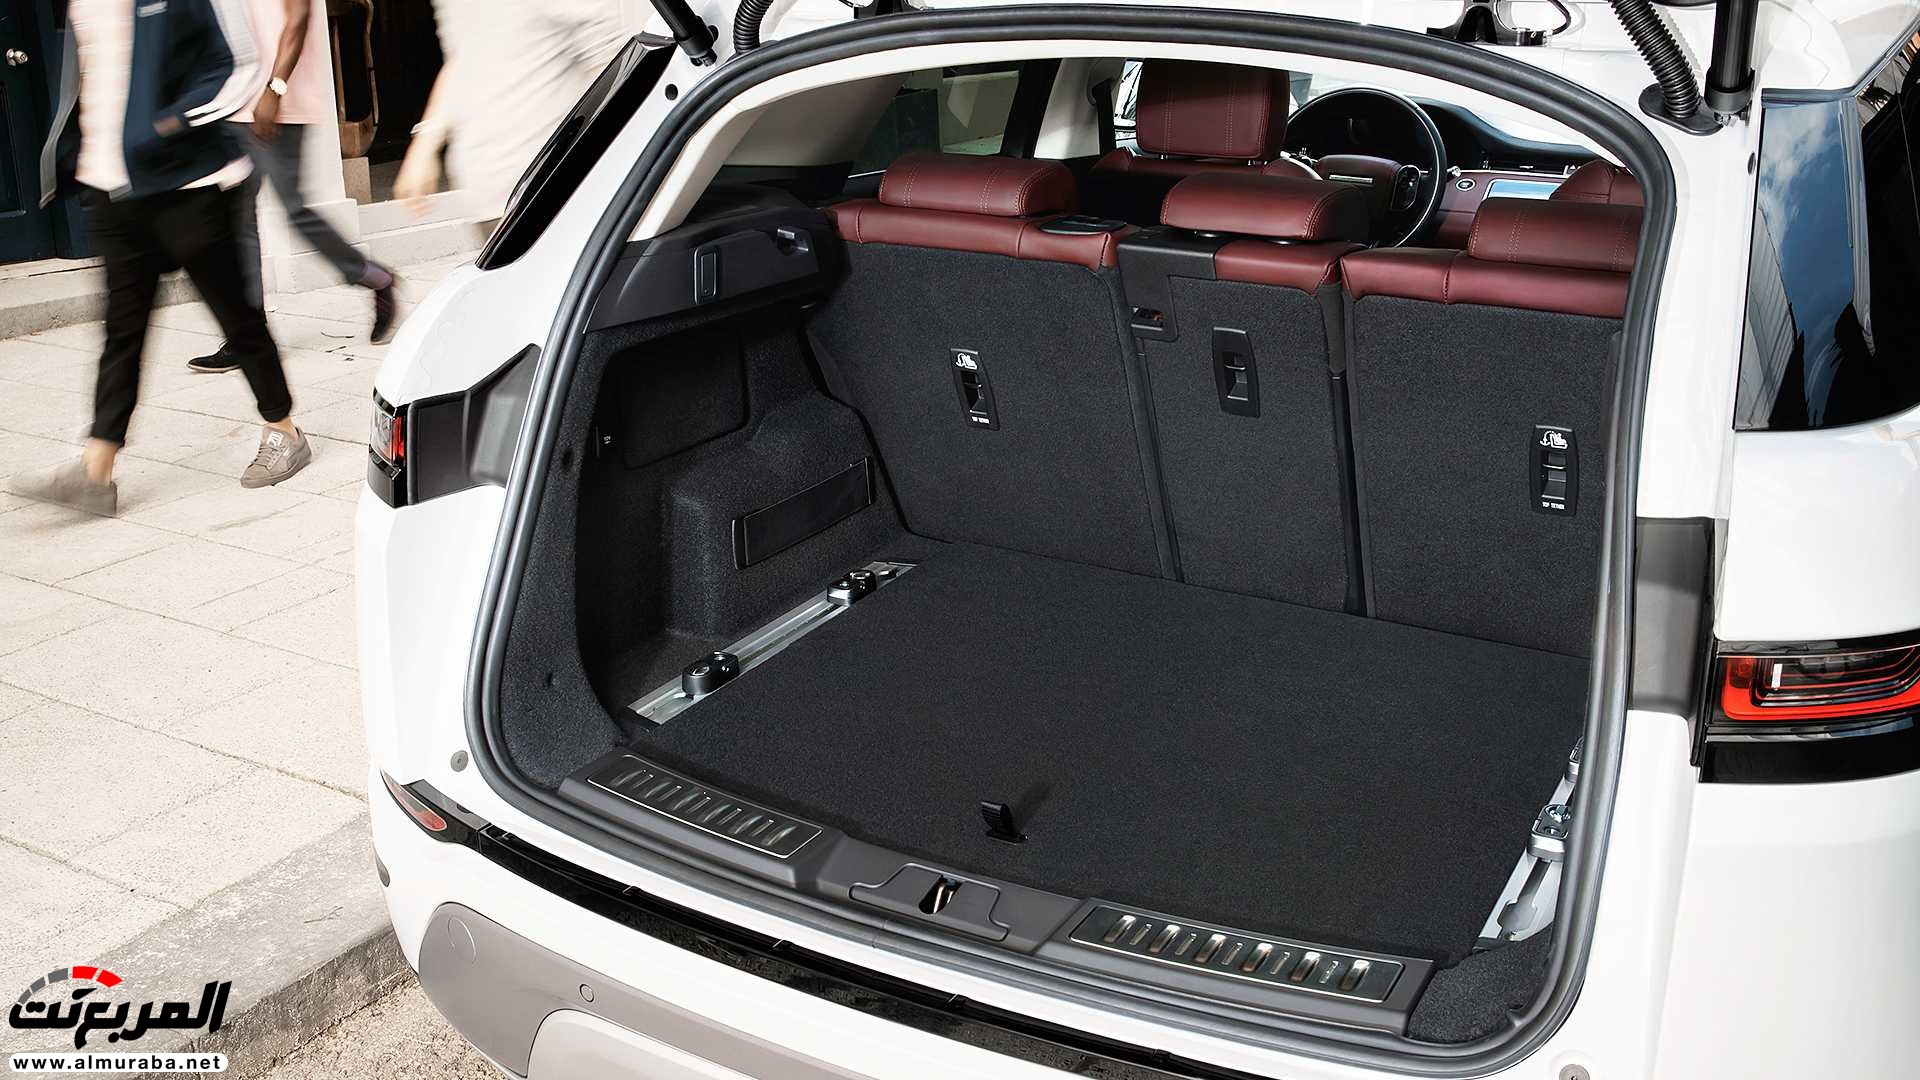 اهم 7 معلومات عن رنج روفر ايفوك 2020 الجديدة كلياً Range Rover Evoque 326